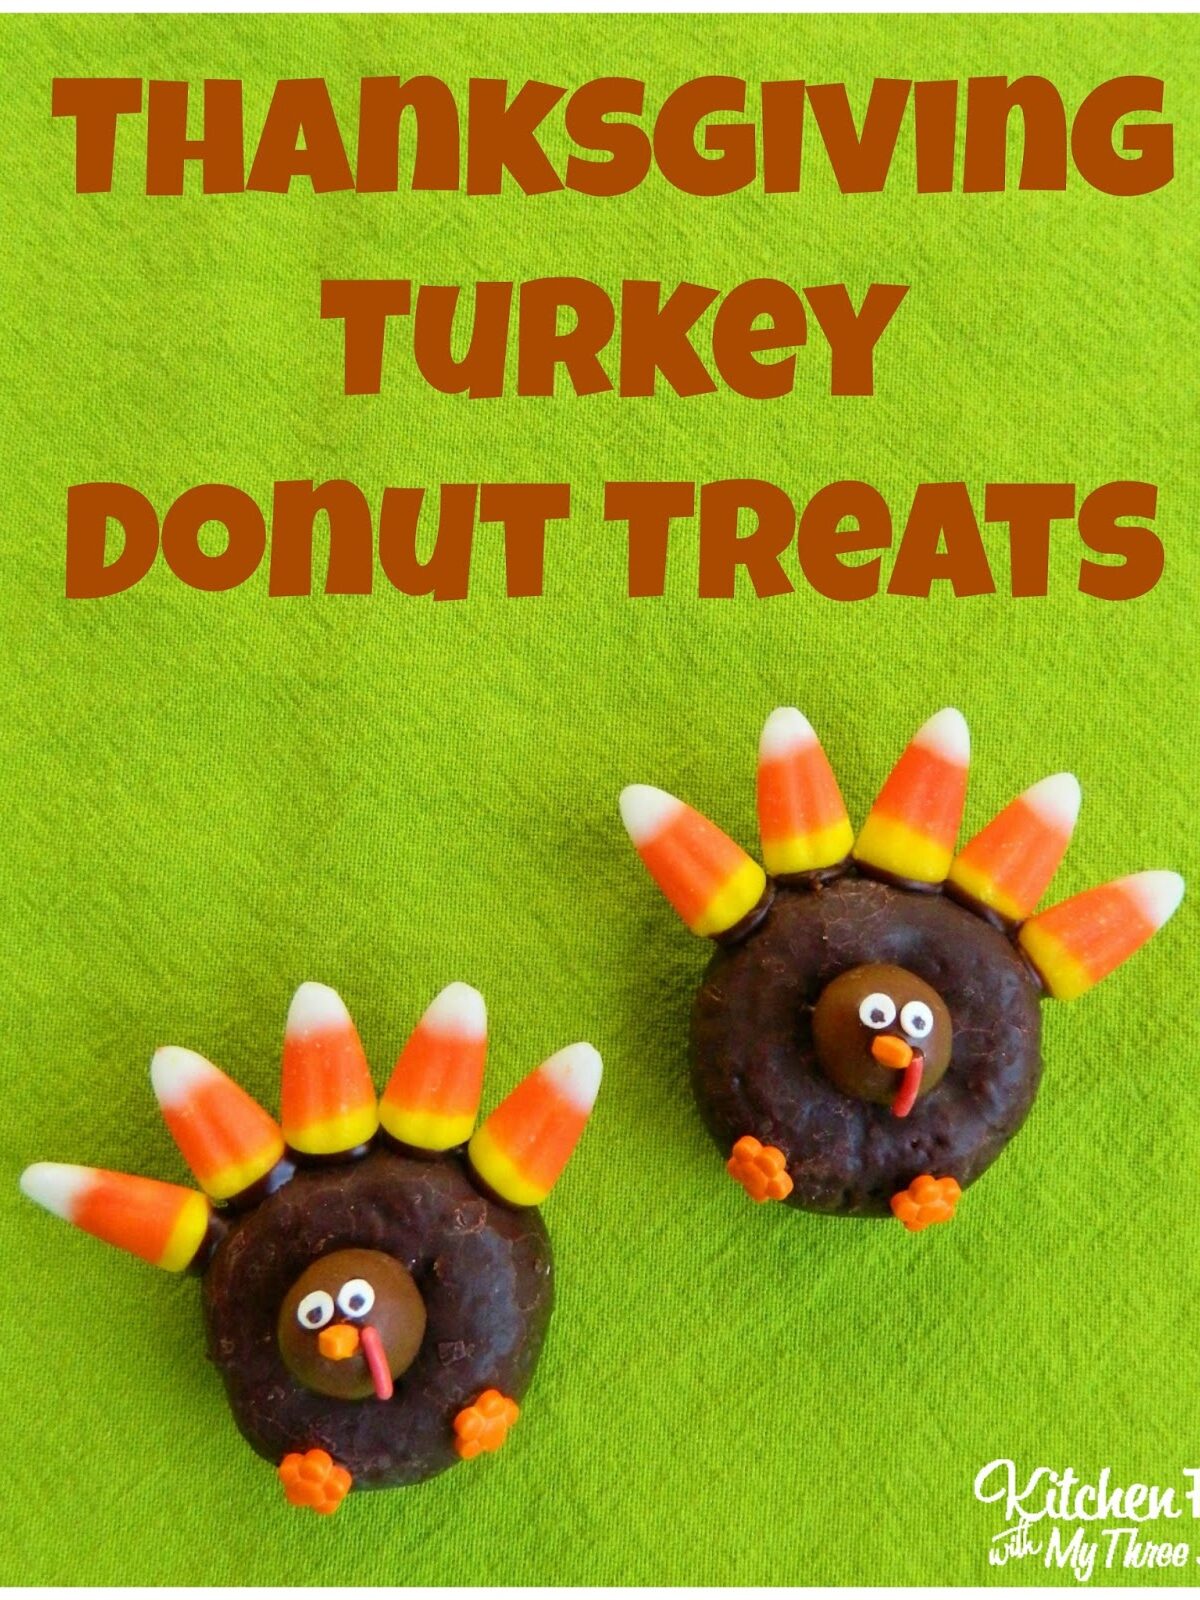 Turkey donut treats pin